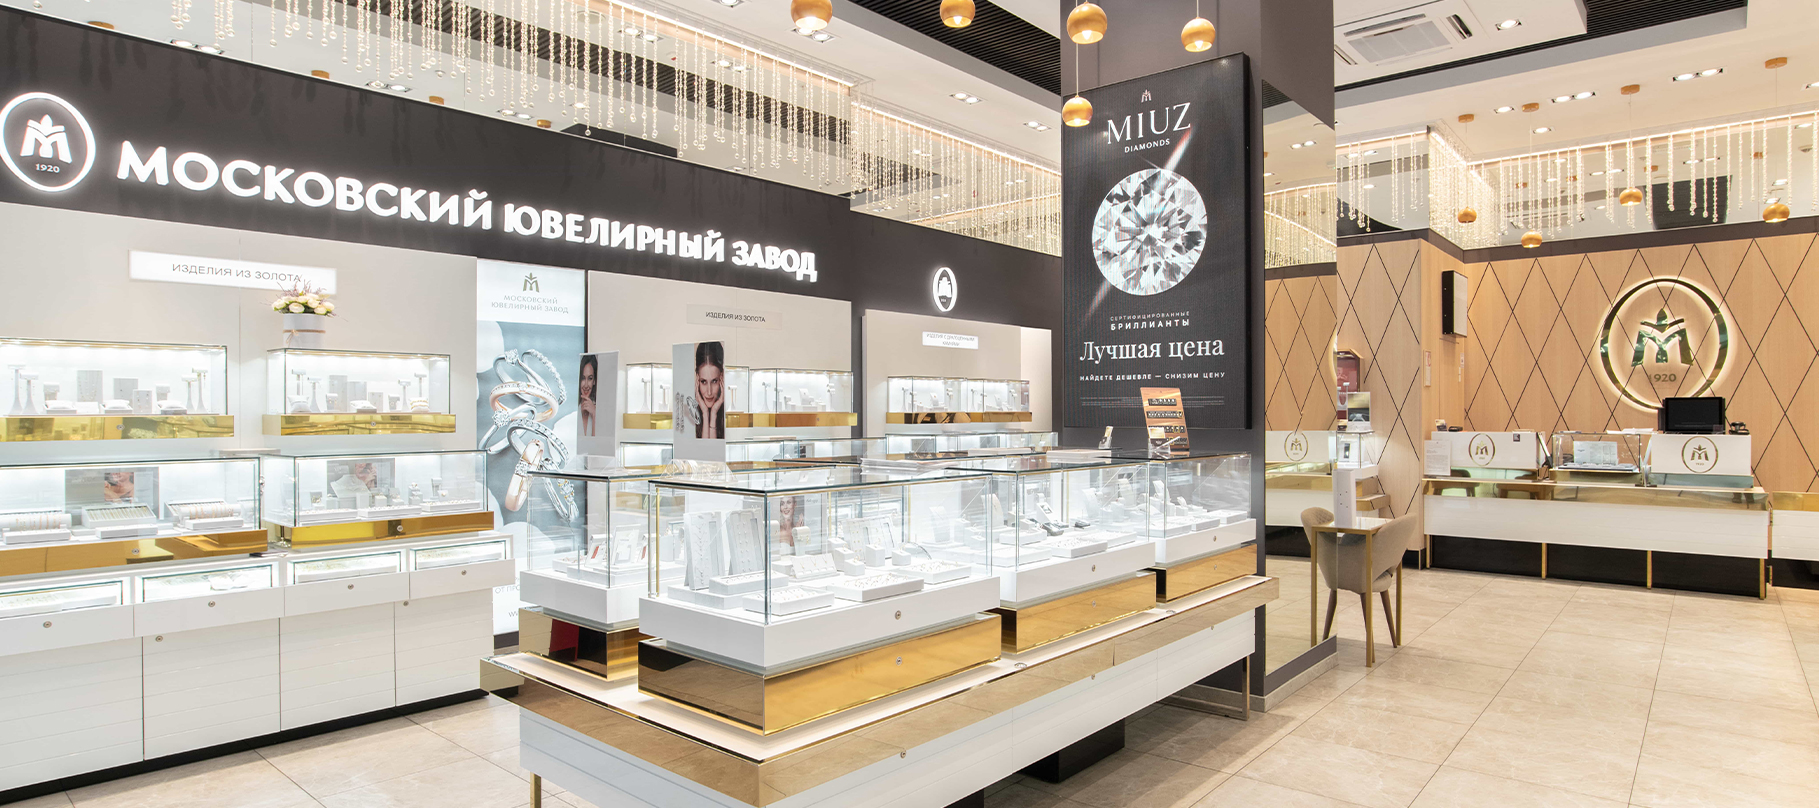 MIUZ Diamonds Авиапарк (ювелирный центр) в городе Москва – полнаяинформация о магазине